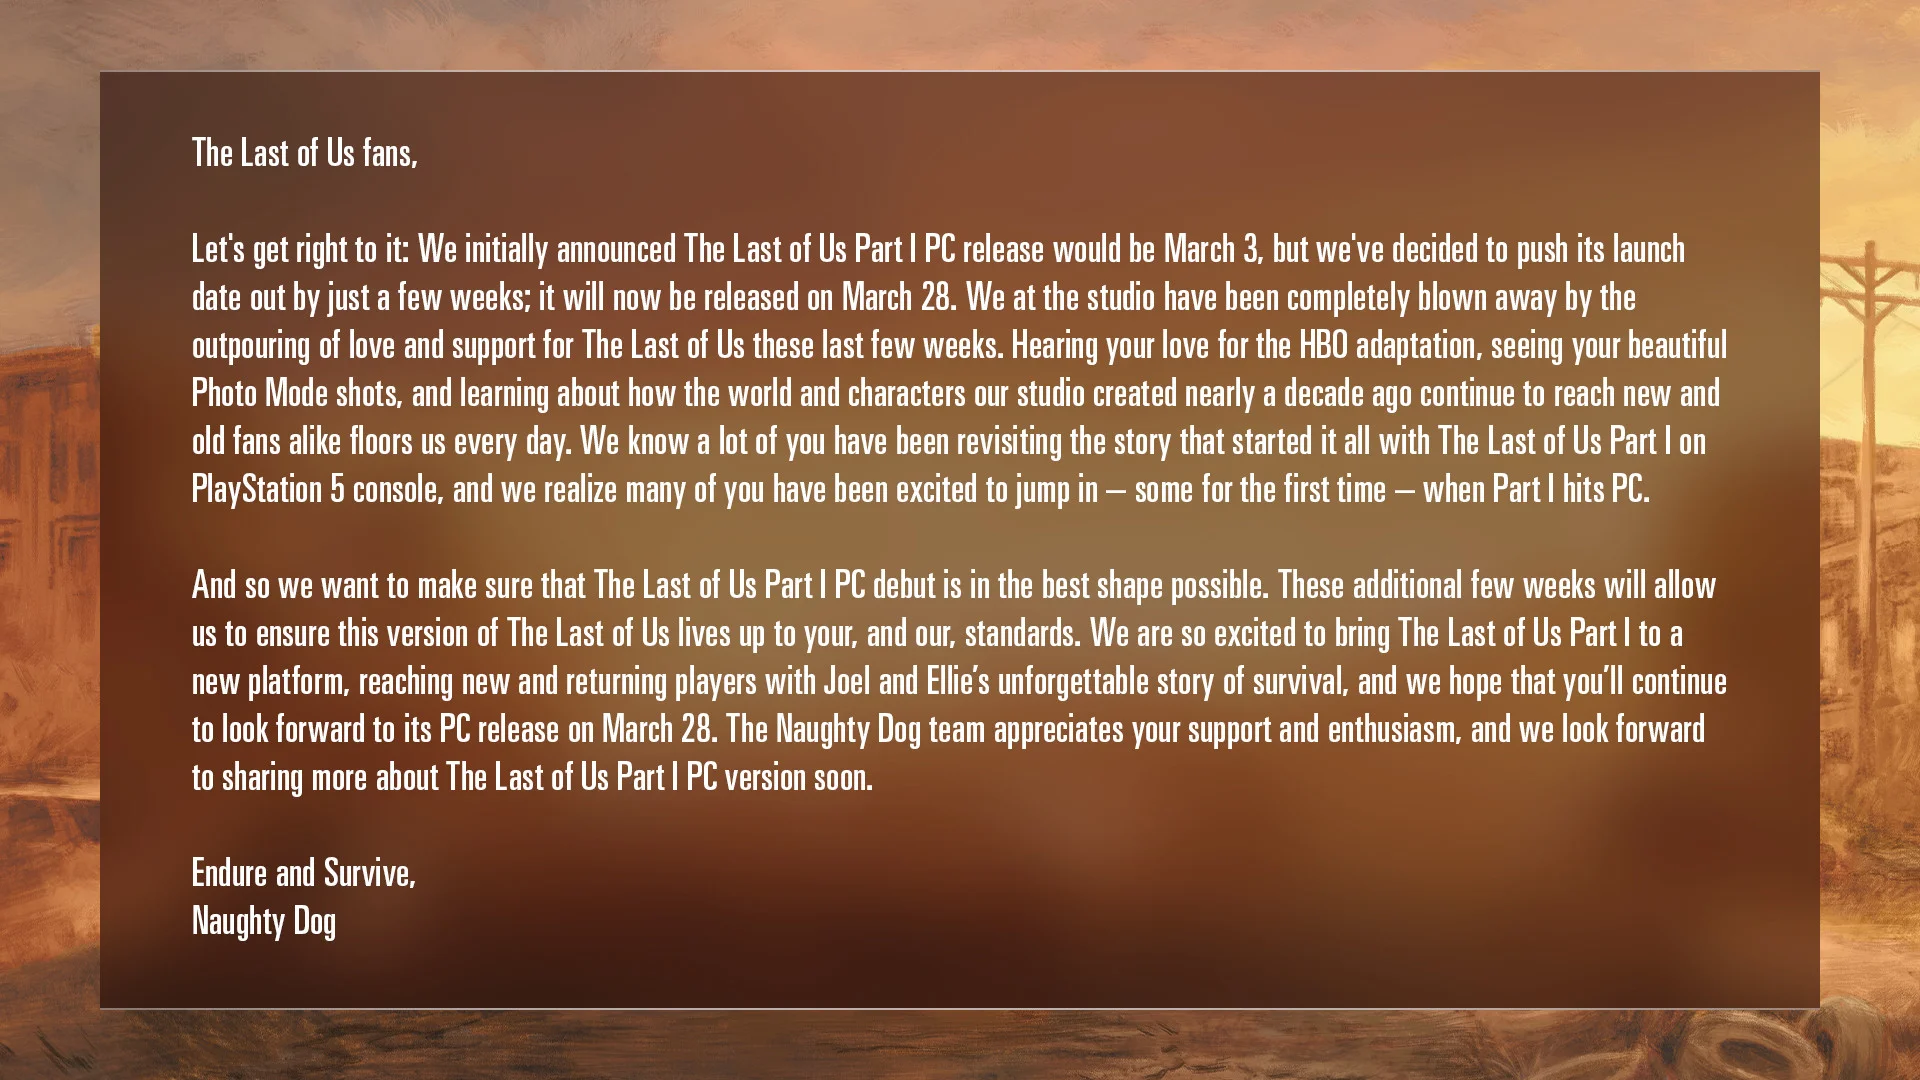 PC-версия The Last of Us: Part I переехала на 28 марта - фото 1